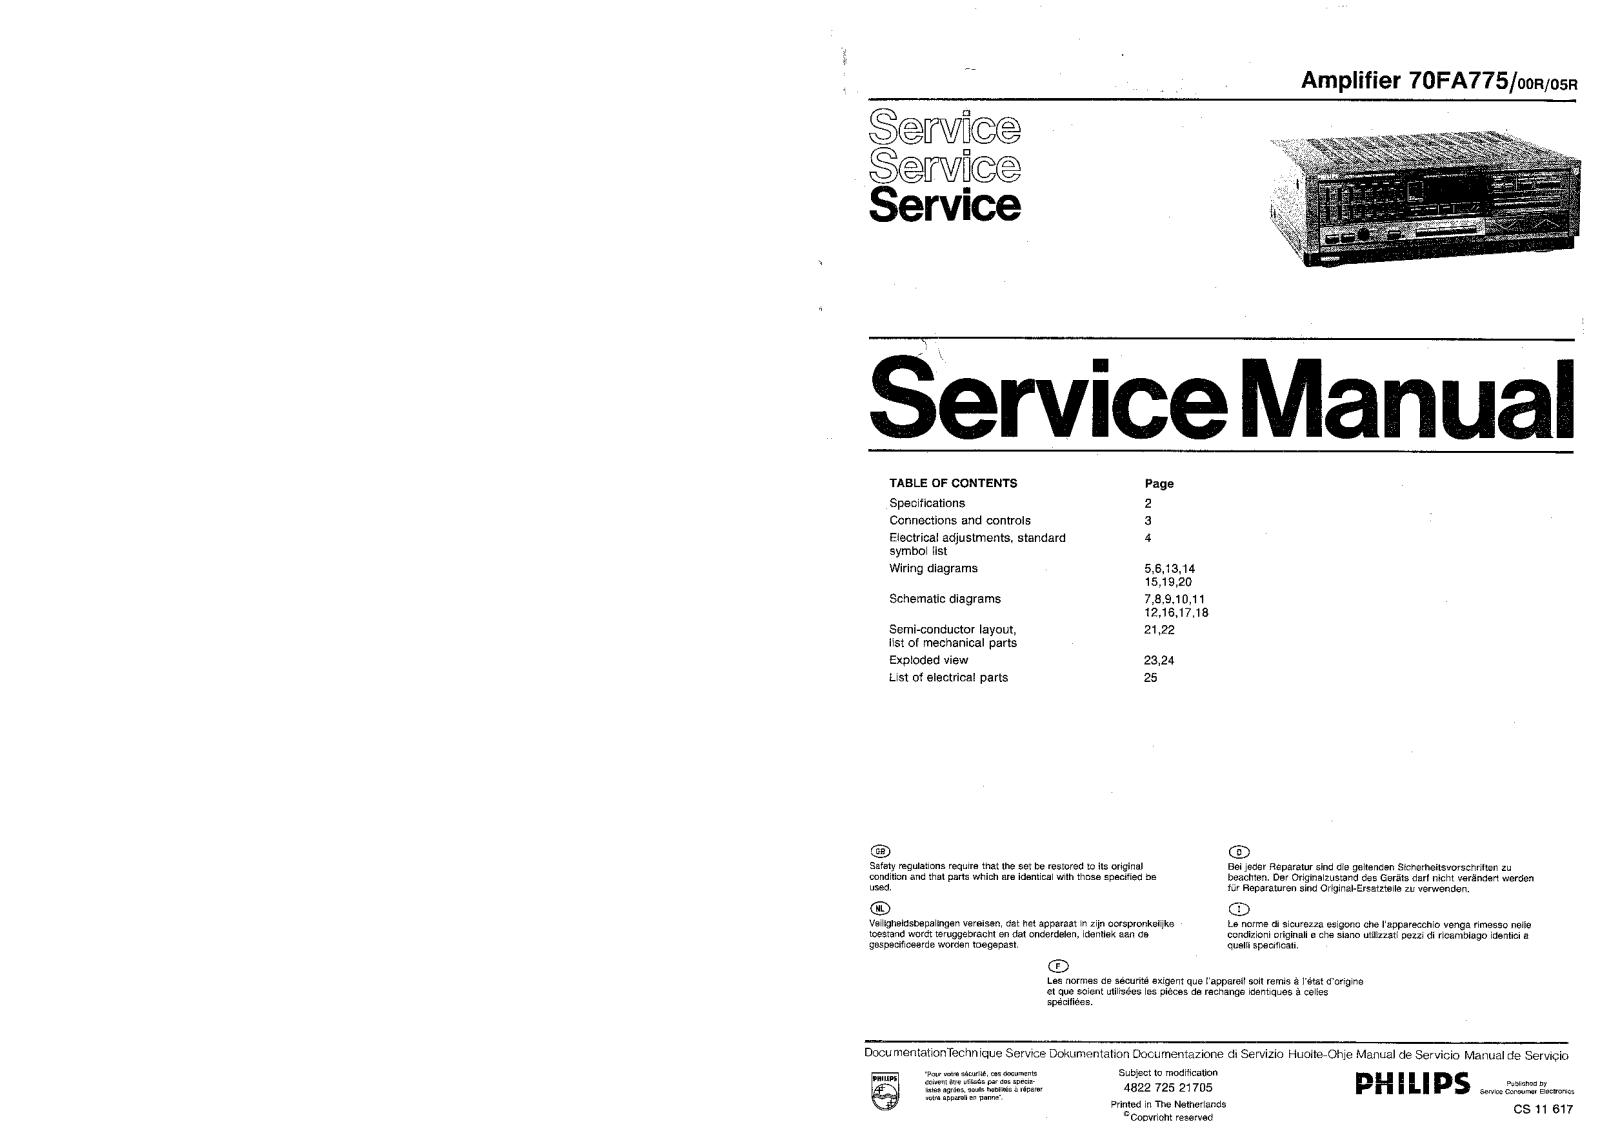 Philips FA-775 Service Manual